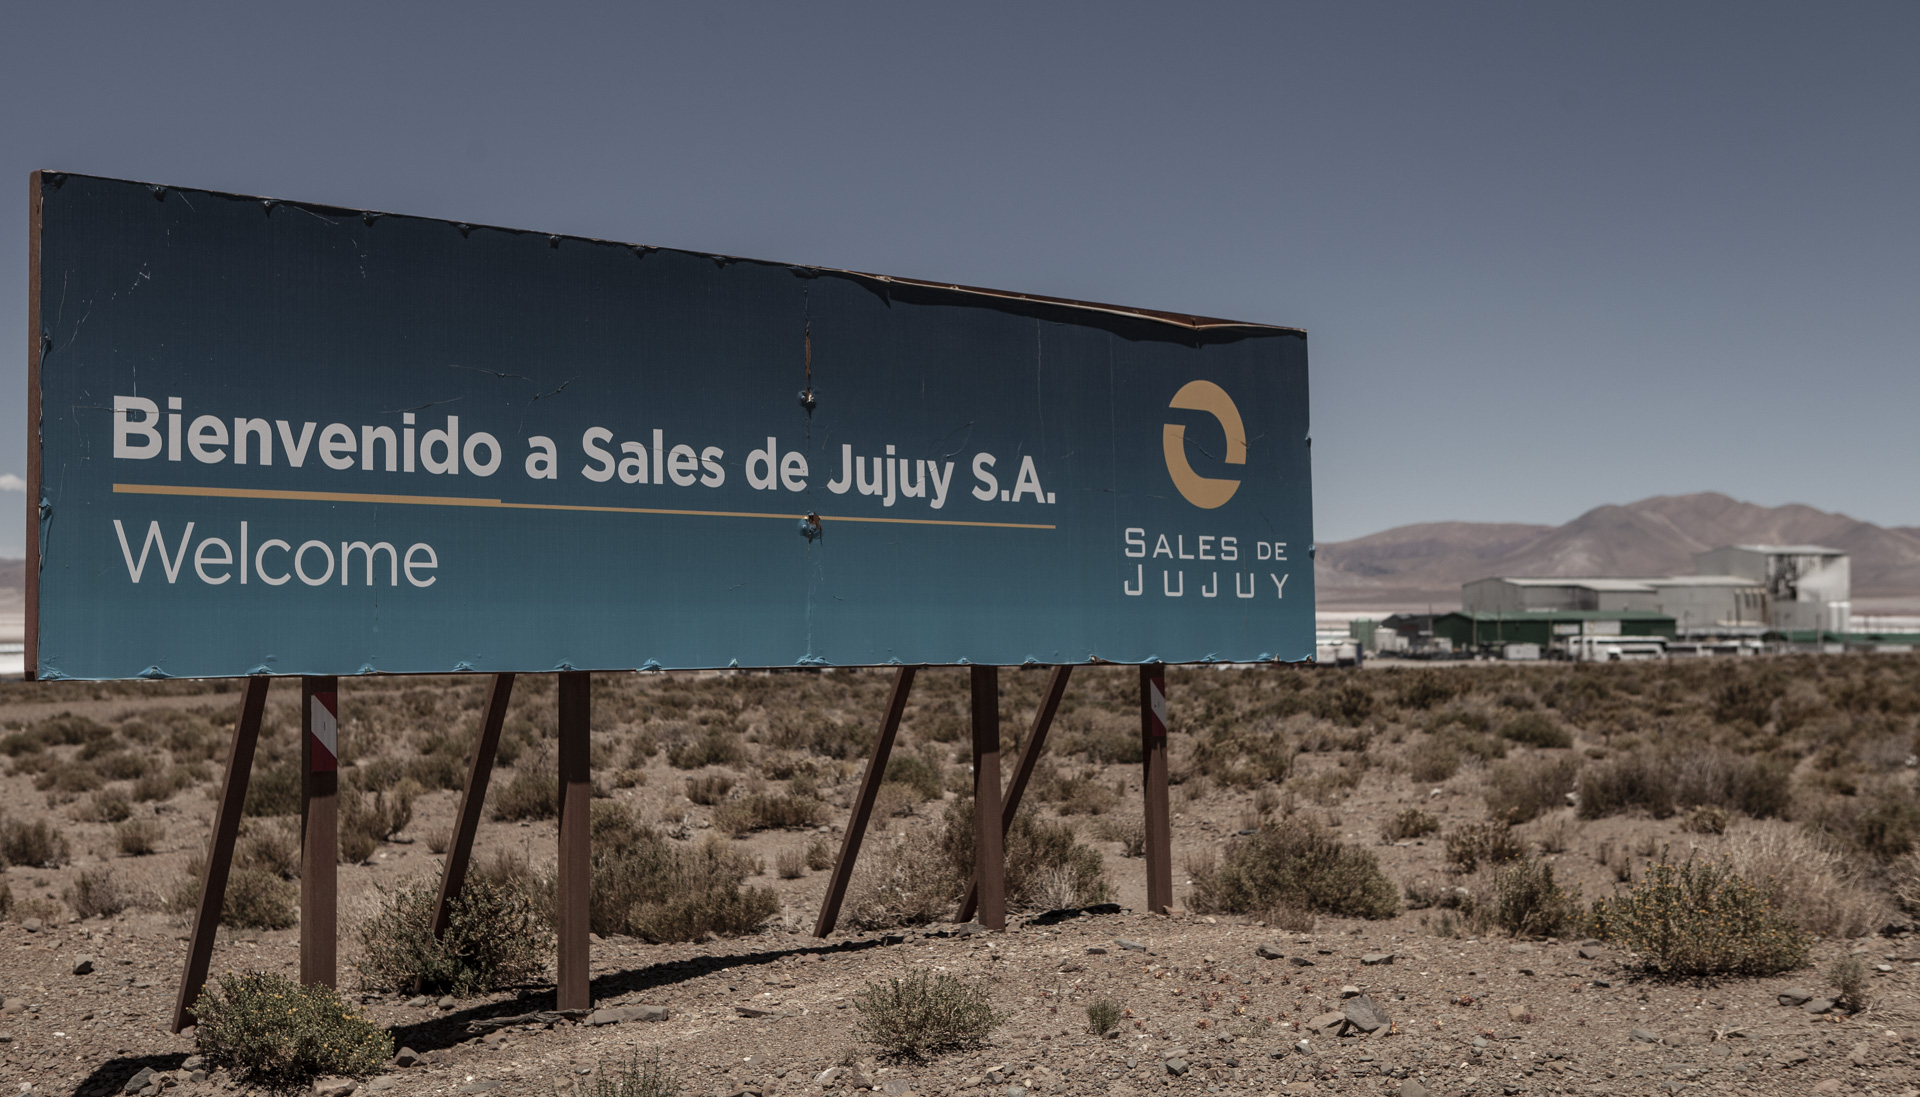 Sales de Jujuy billboard